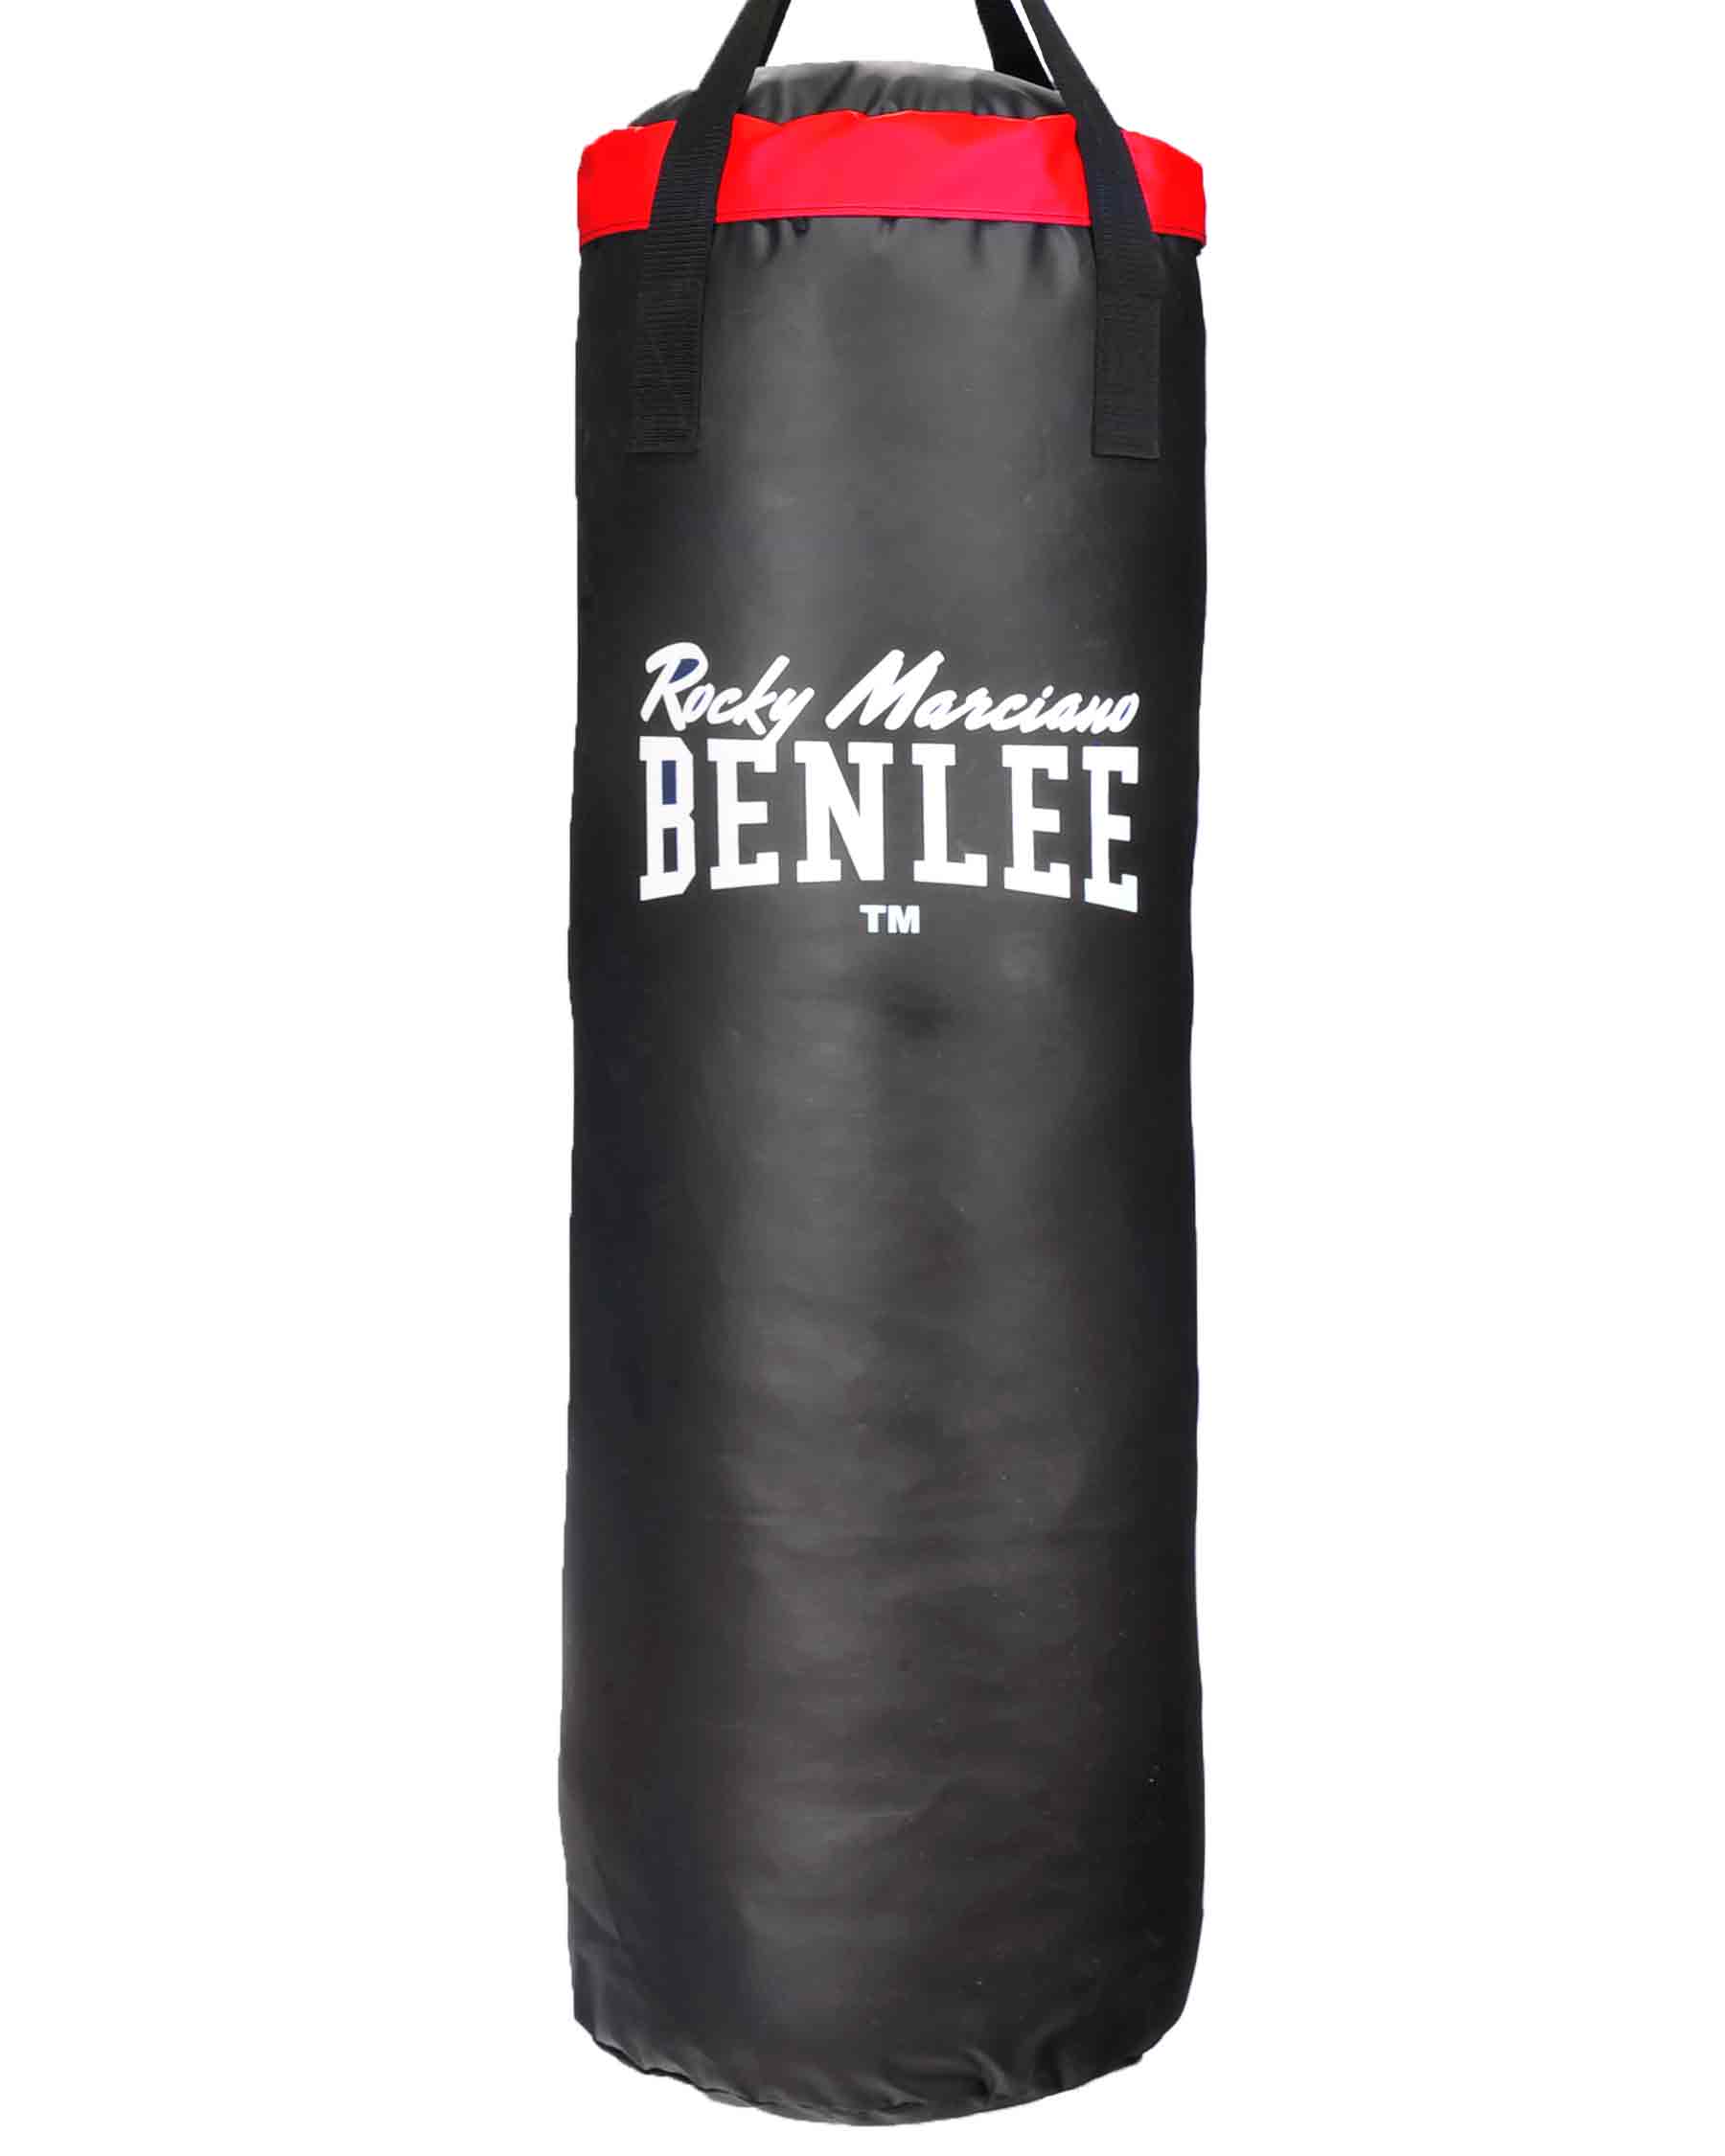 BenLee filled punching bag Hartney 100cm